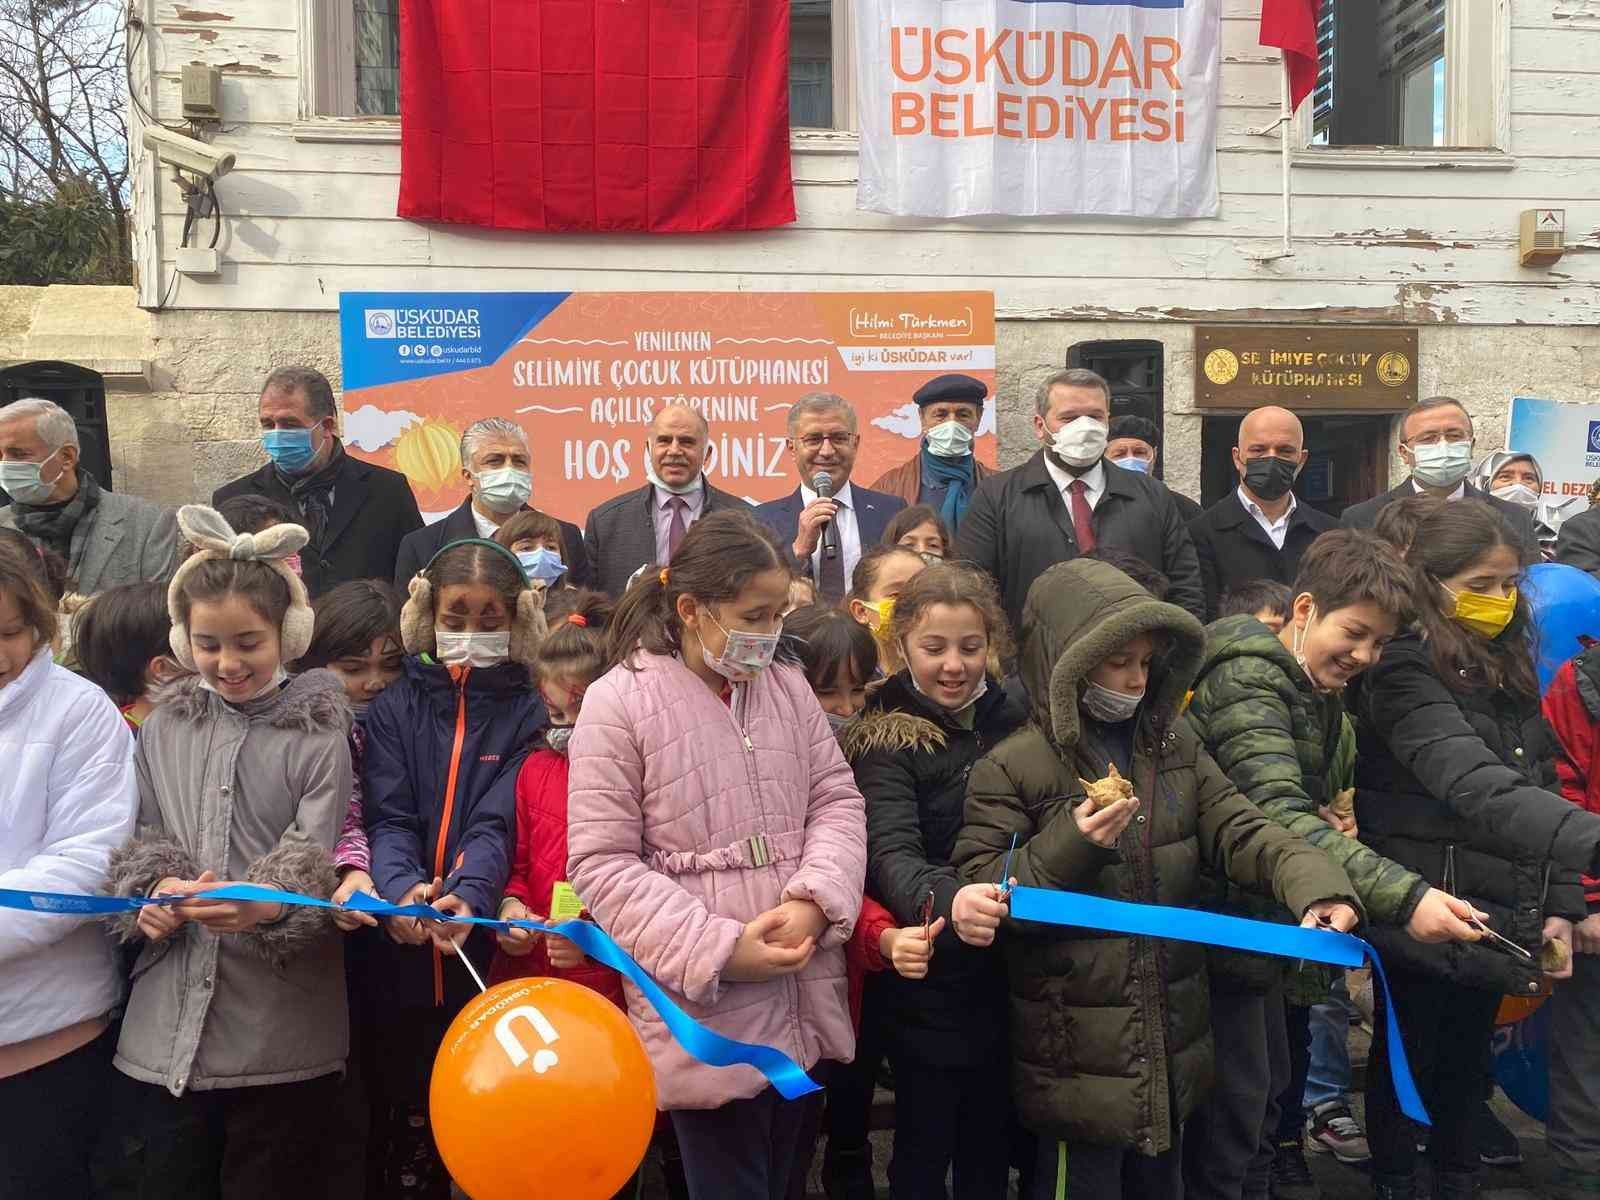 Selimiye Çocuk Kütüphanesi yeni yüzüyle hizmete açıldı #istanbul